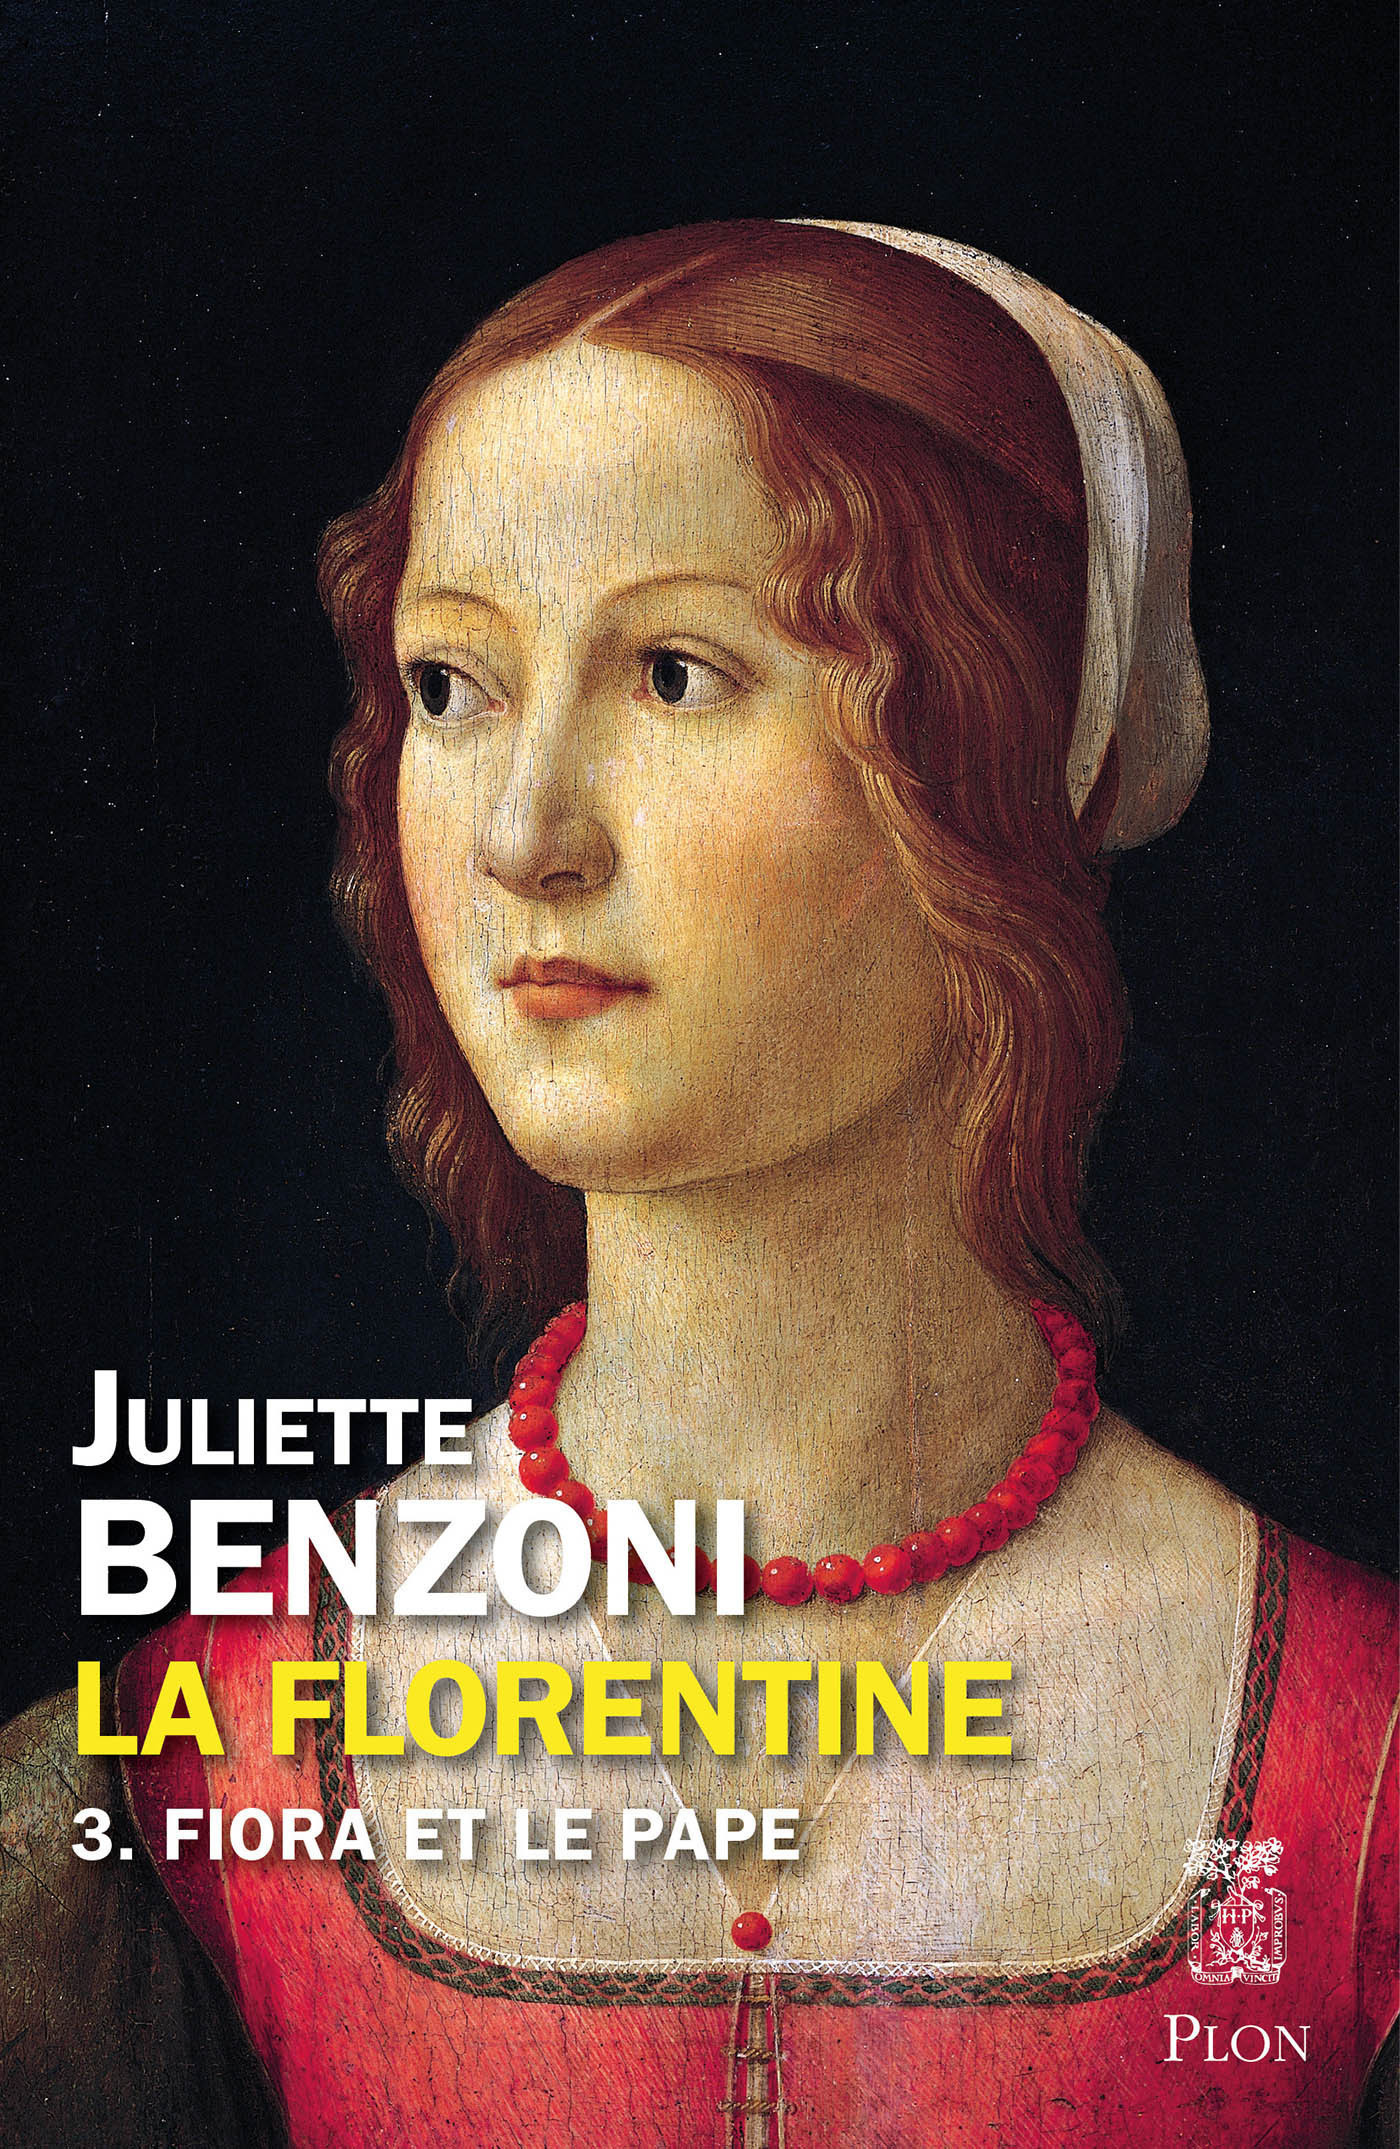 Afficher "La Florentine tome 3 - Fiora et le pape"